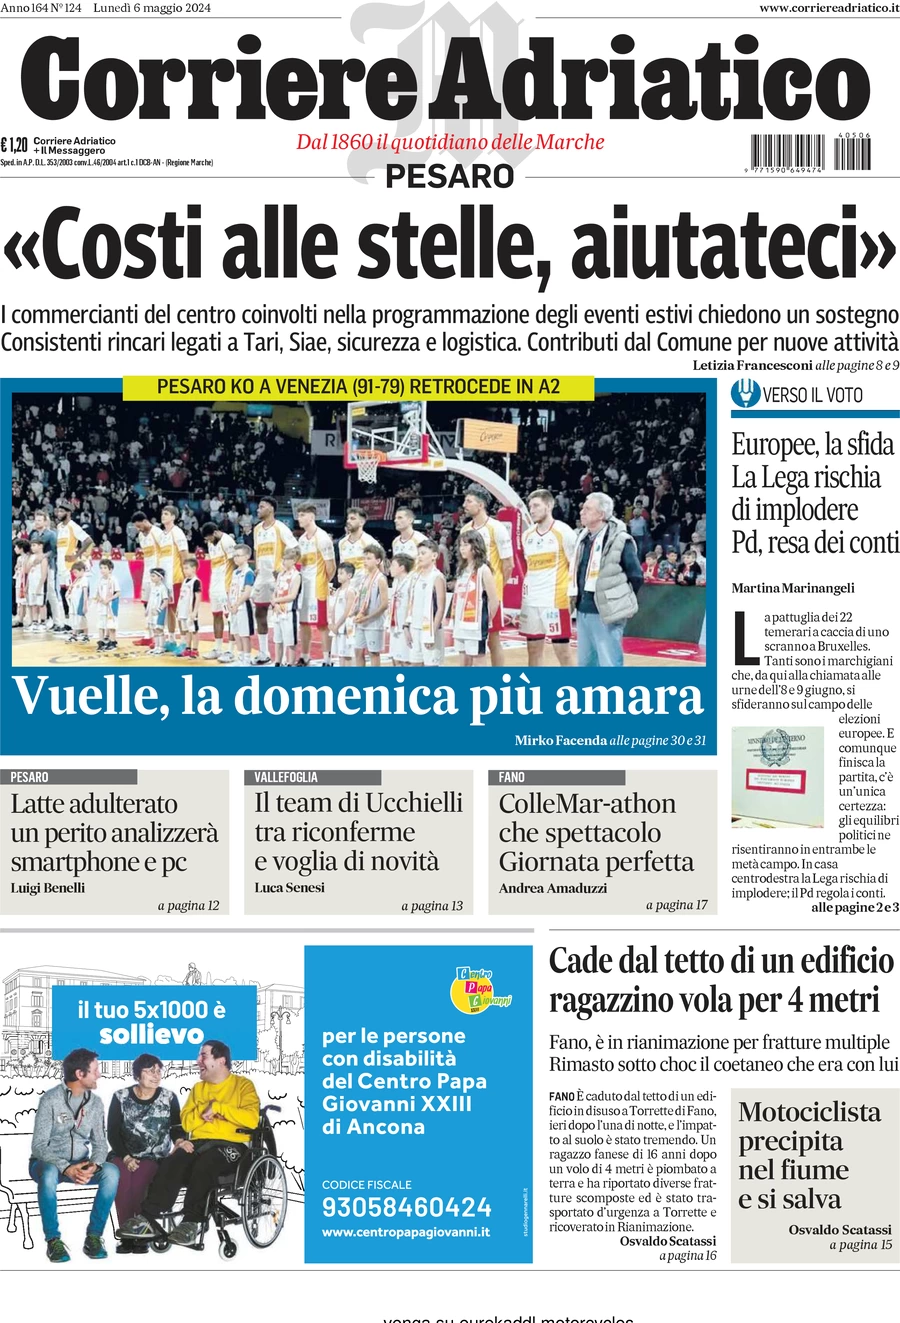 anteprima della prima pagina di Corriere Adriatico (Pesaro)